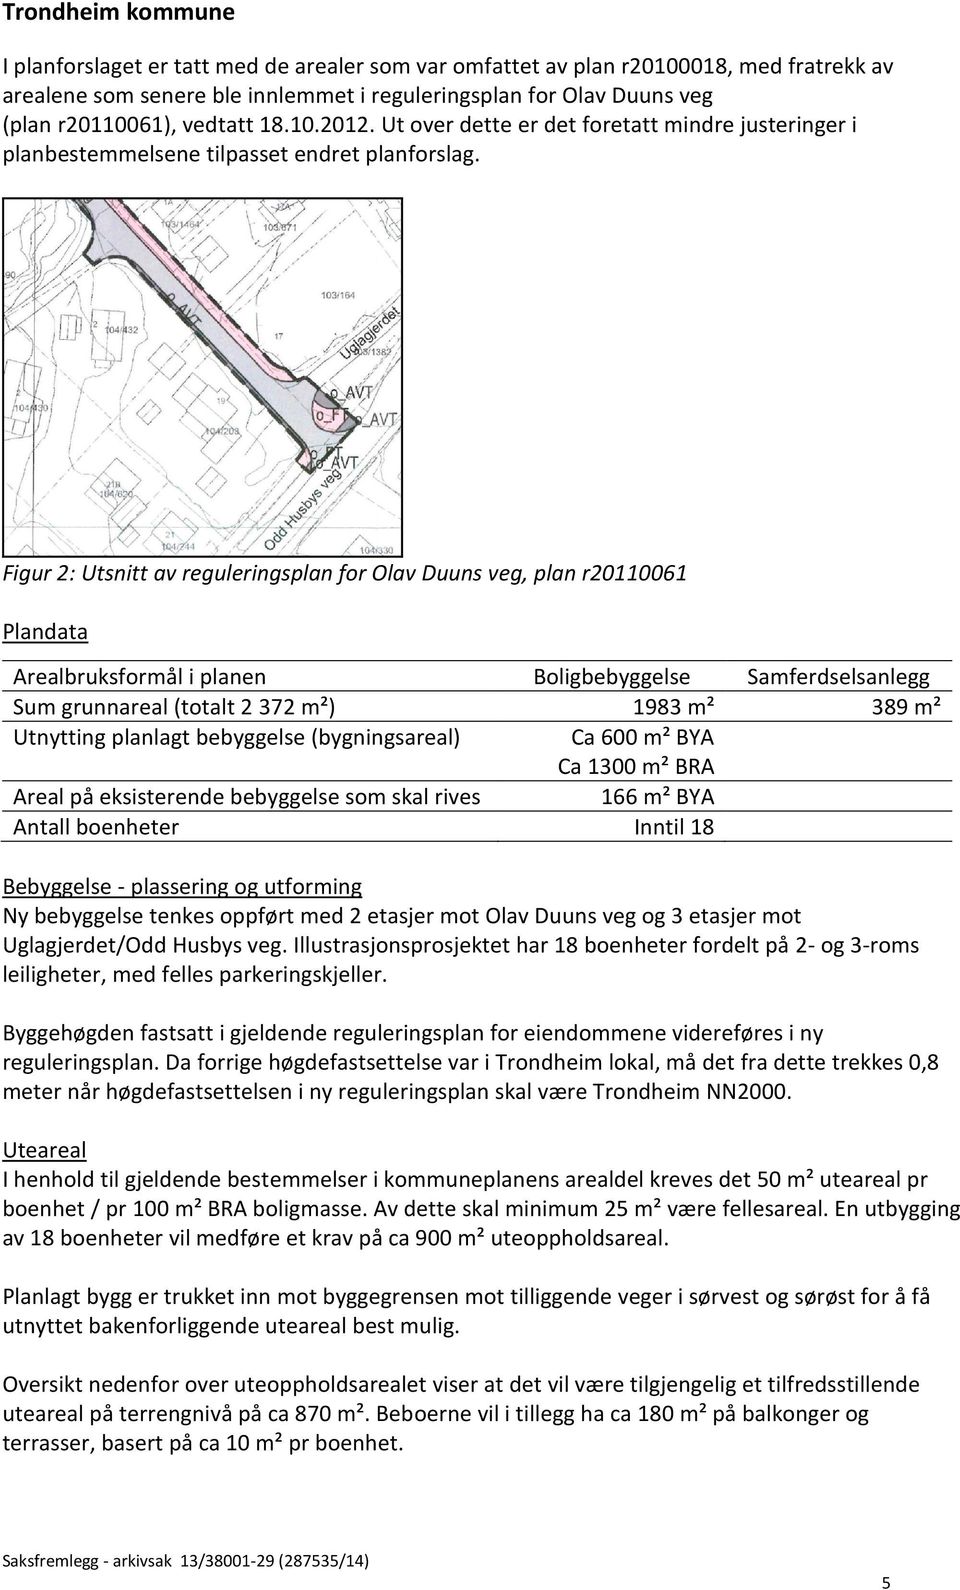 Figur 2: Utsnitt av reguleringsplan for Olav Duuns veg, plan r20110061 Plandata Arealbruksformål i planen Boligbebyggelse Samferdselsanlegg Sum grunnareal (totalt 2 372 m²) 1983 m² 389 m² Utnytting